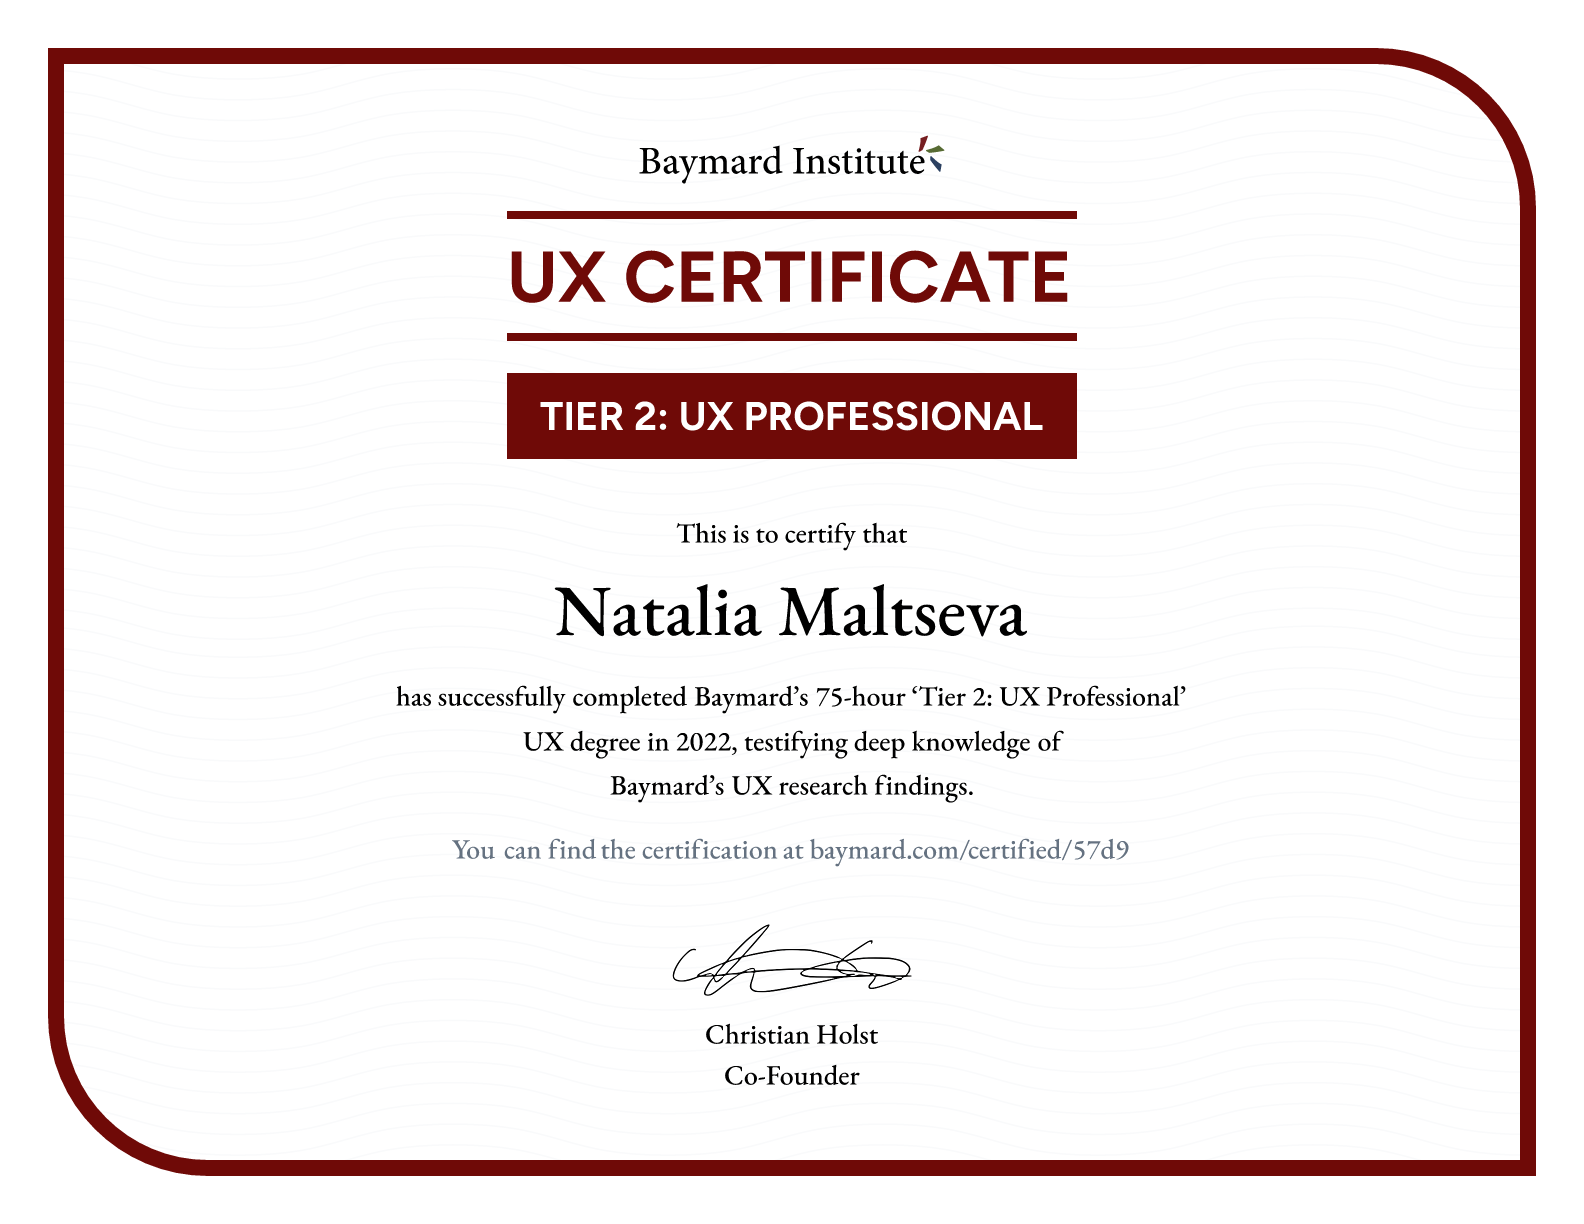 Natalia Maltseva’s certificate